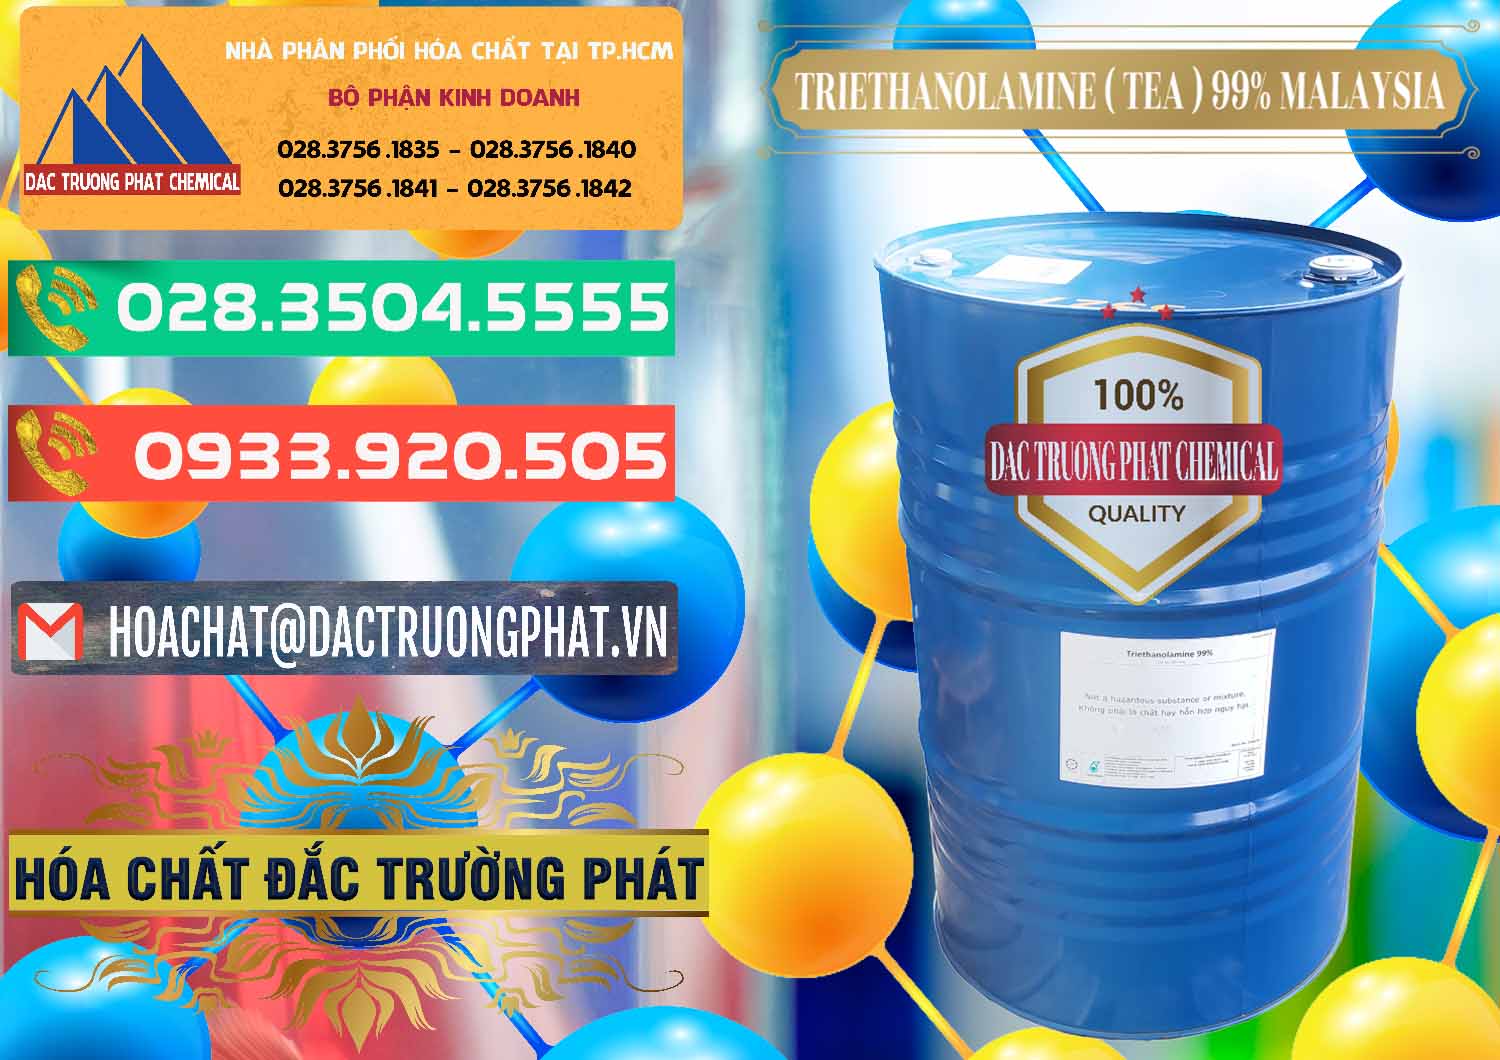 Đơn vị chuyên bán ( phân phối ) TEA - Triethanolamine 99% Mã Lai Malaysia - 0323 - Nơi chuyên cung cấp & nhập khẩu hóa chất tại TP.HCM - congtyhoachat.com.vn